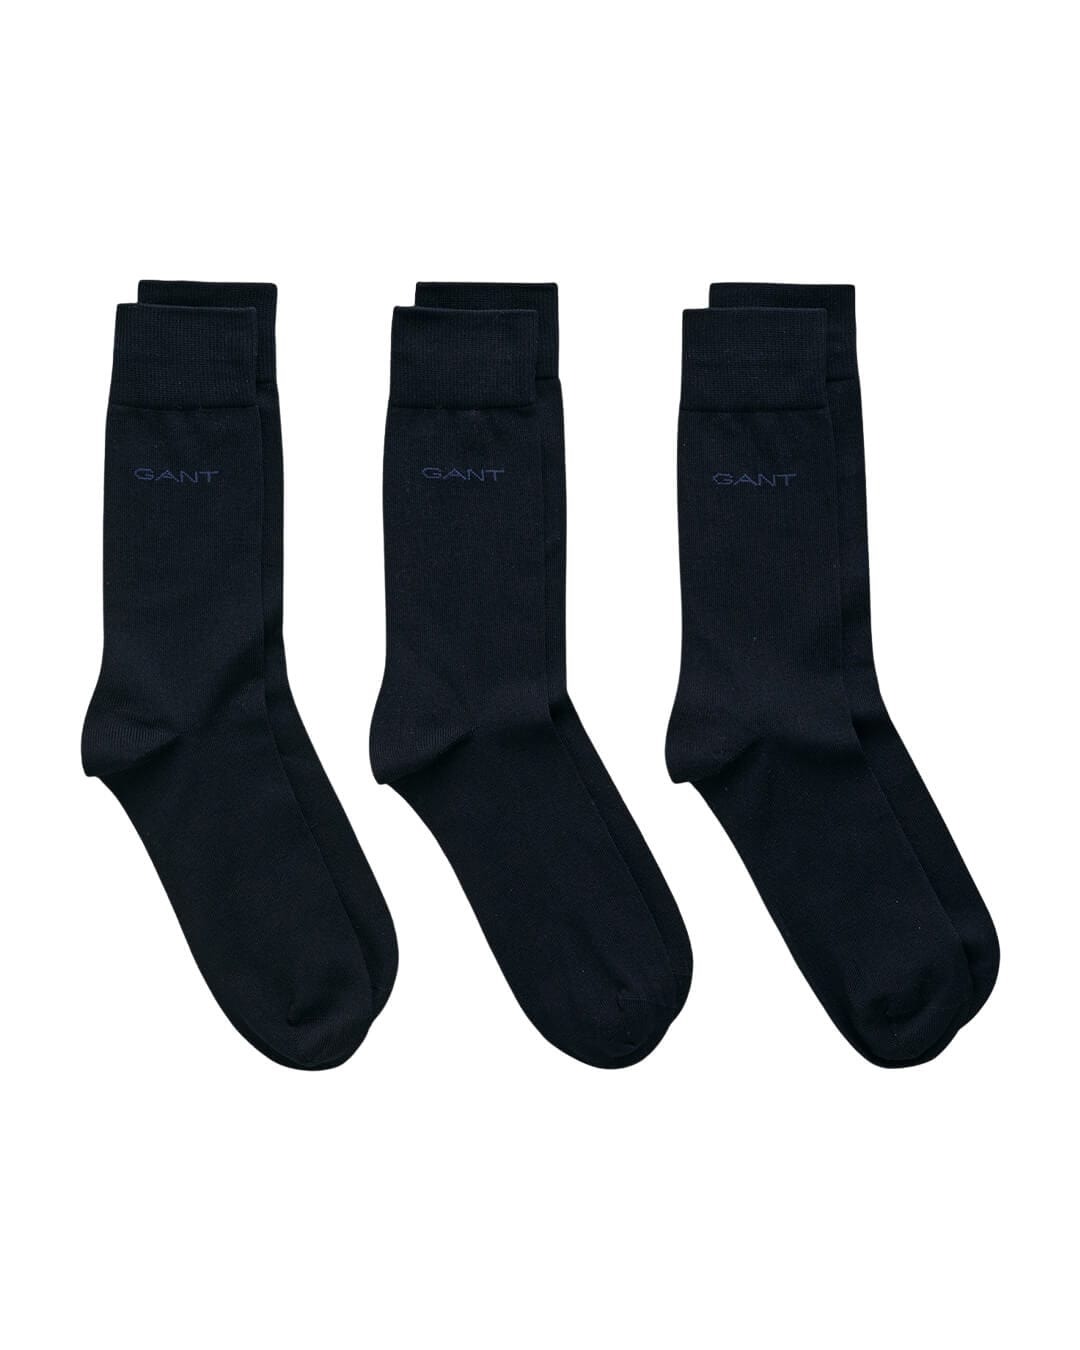 Gant Socks Gant Marine 3-Pack Mercerized Cotton Socks